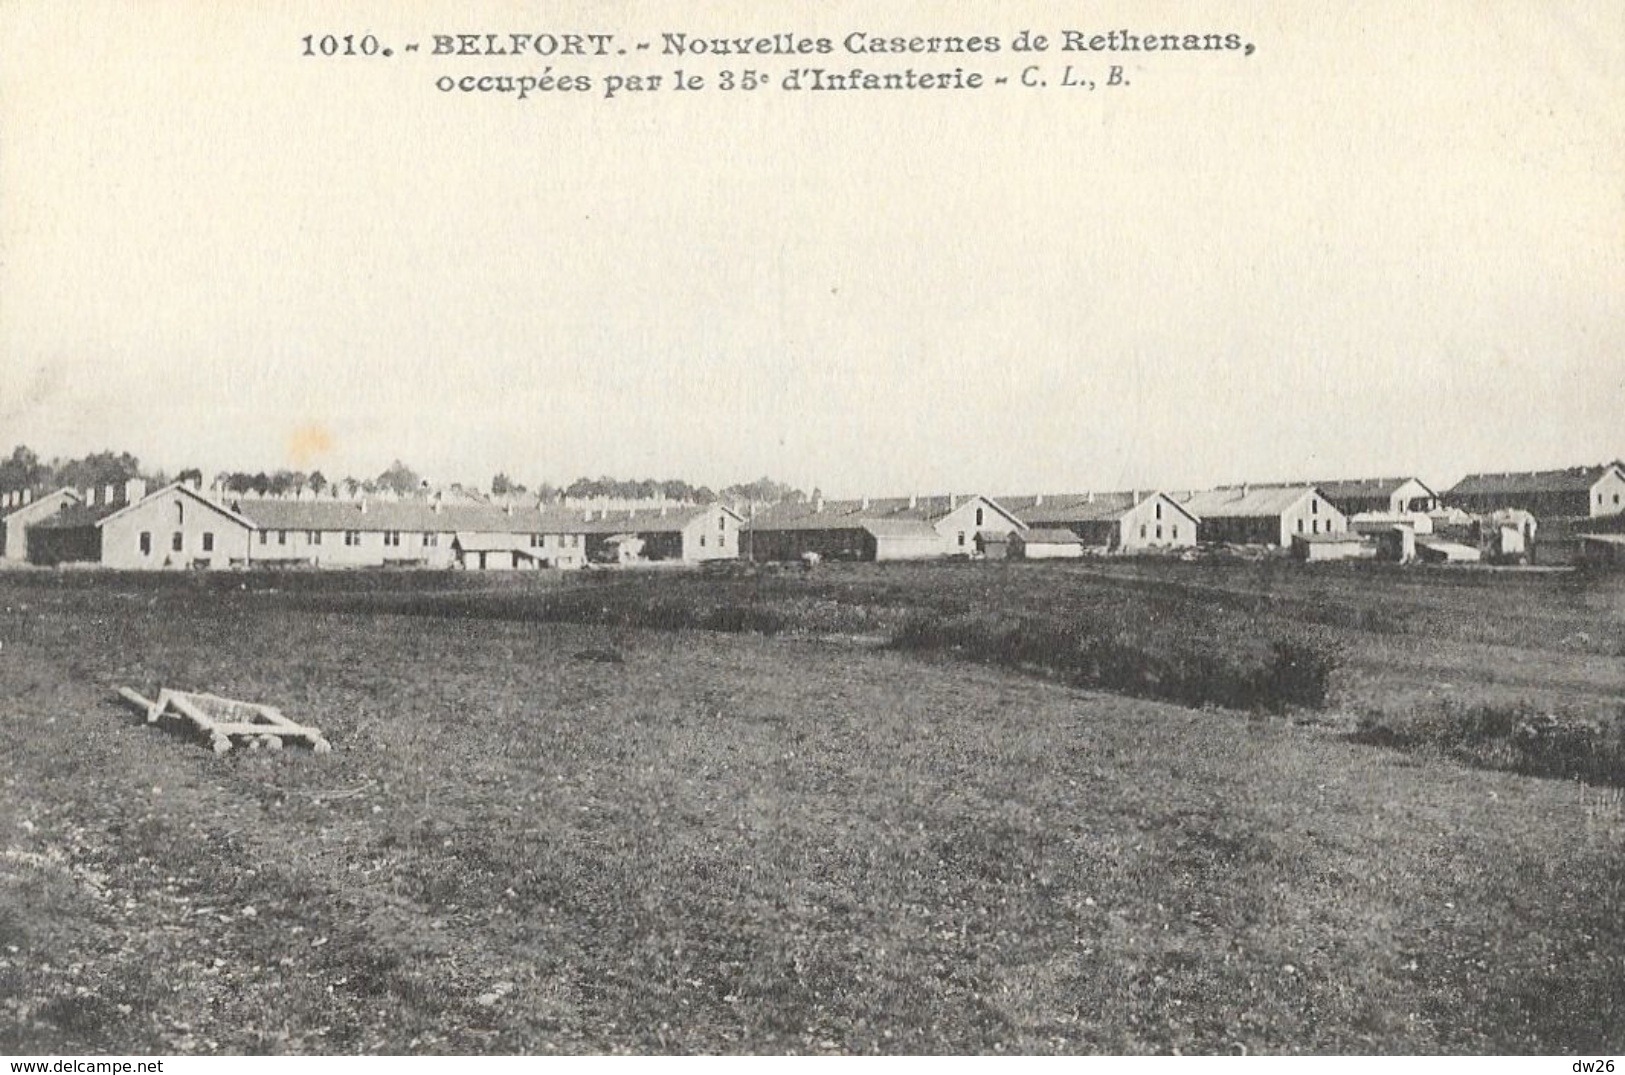 Belfort - Nouvelles Casernes De Rethenans, Occupées Par Le 35e D'Infanterie - Carte C.L.B. N° 1010 Non Circulée - Casernes